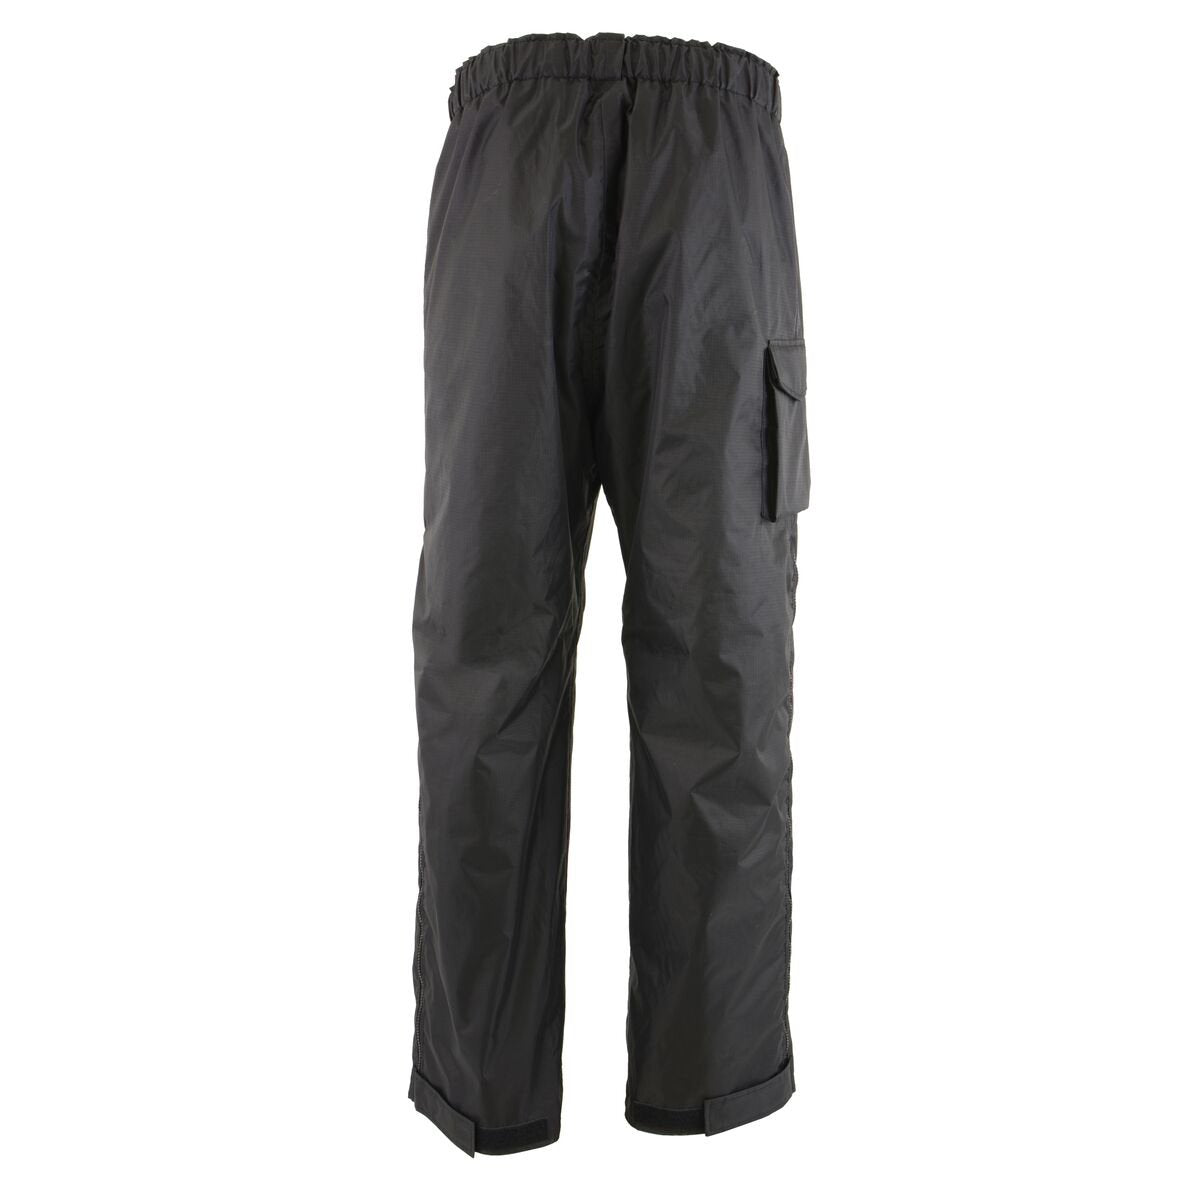 Men's Motorcycle Waterproof Textile Over-Pants Chaps Winter Pants